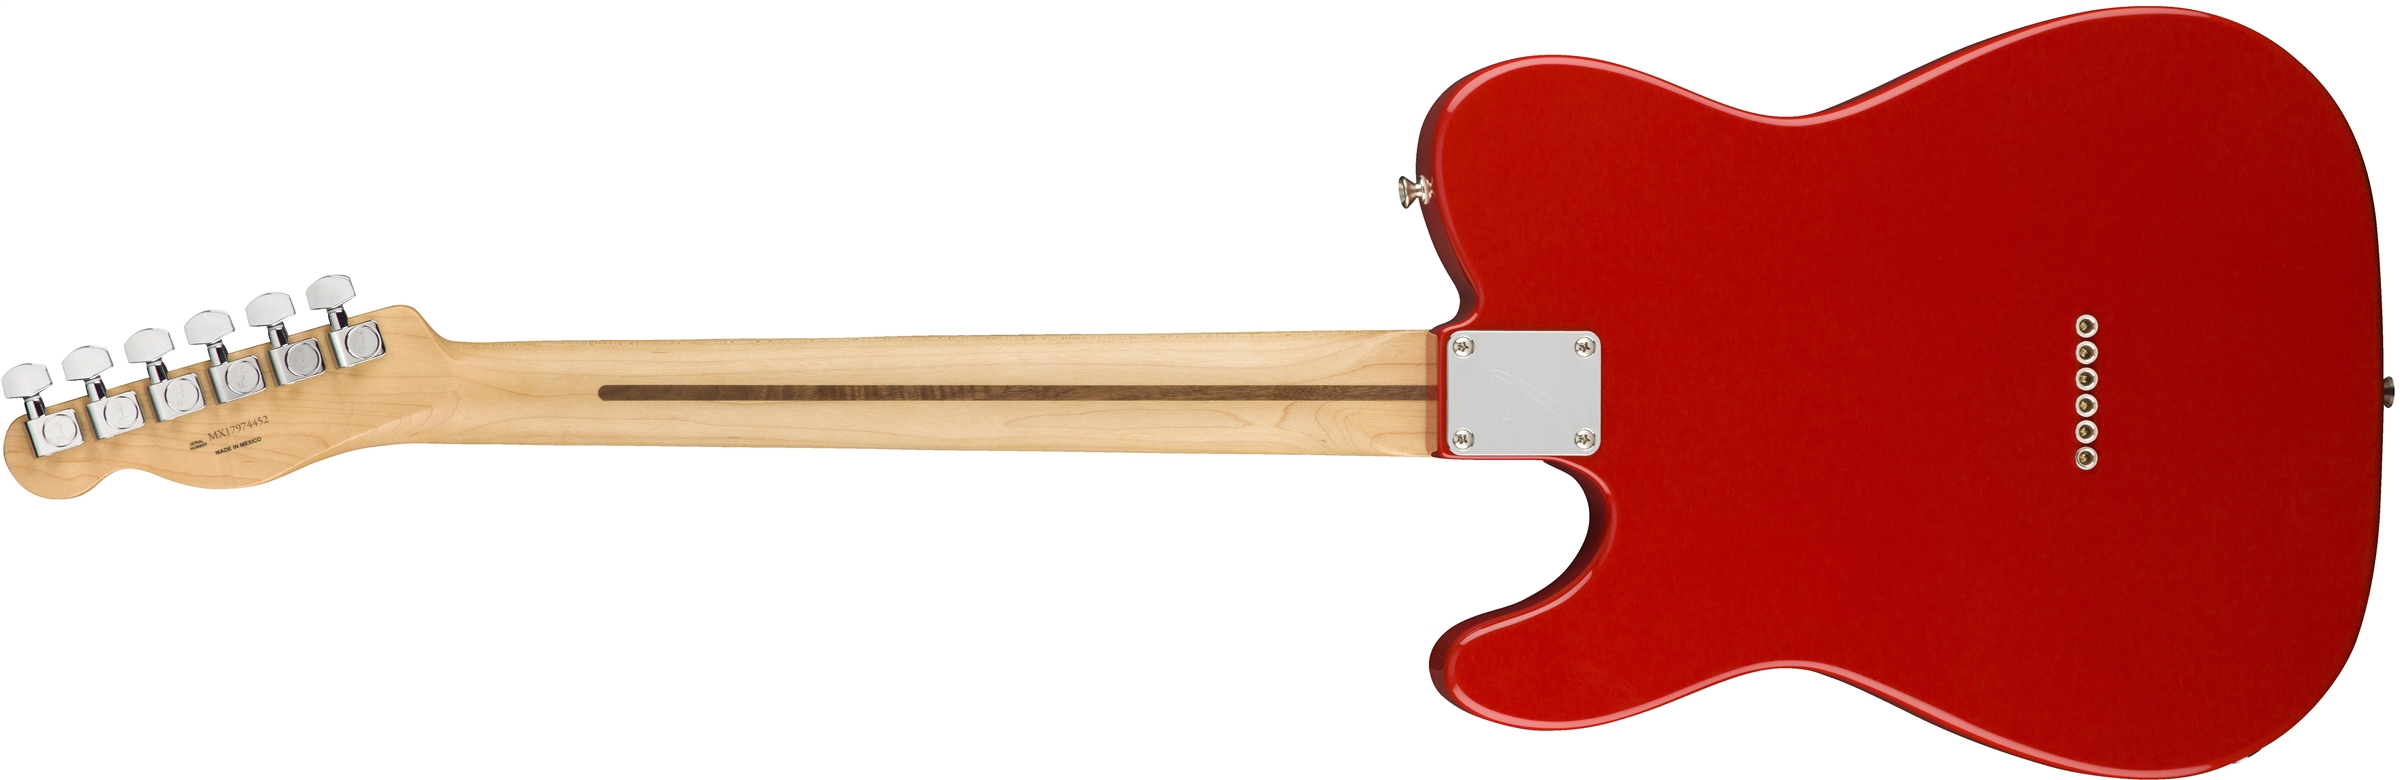 Fender Tele Player Mex Ss Pf - Sonic Red - Televorm elektrische gitaar - Variation 1